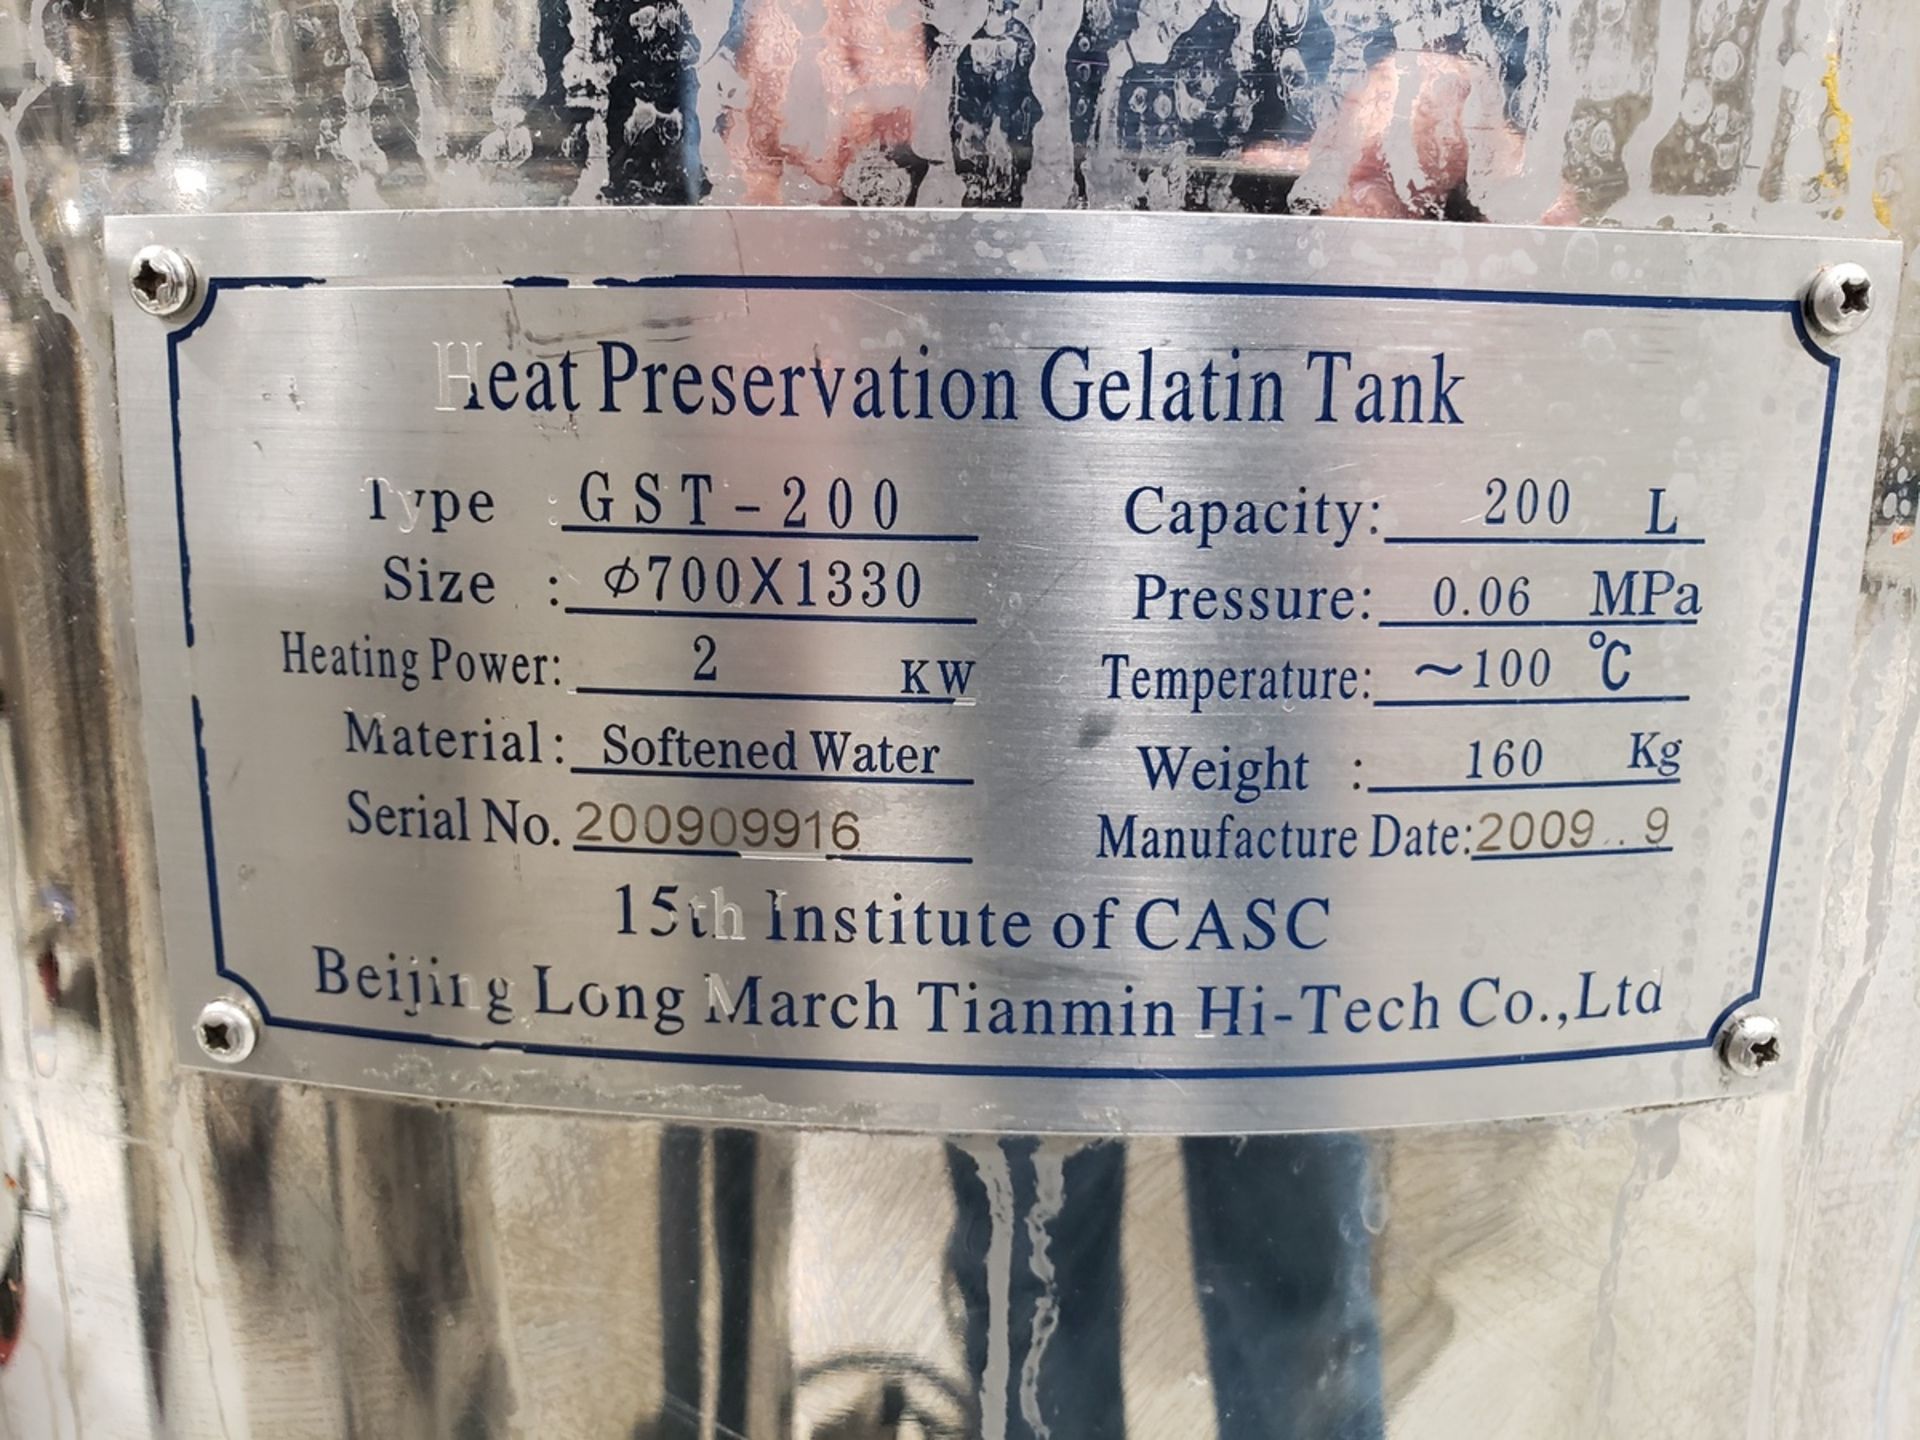 200 Liter Gelatin Storage Tank | Rig Fee $100 - Image 2 of 2